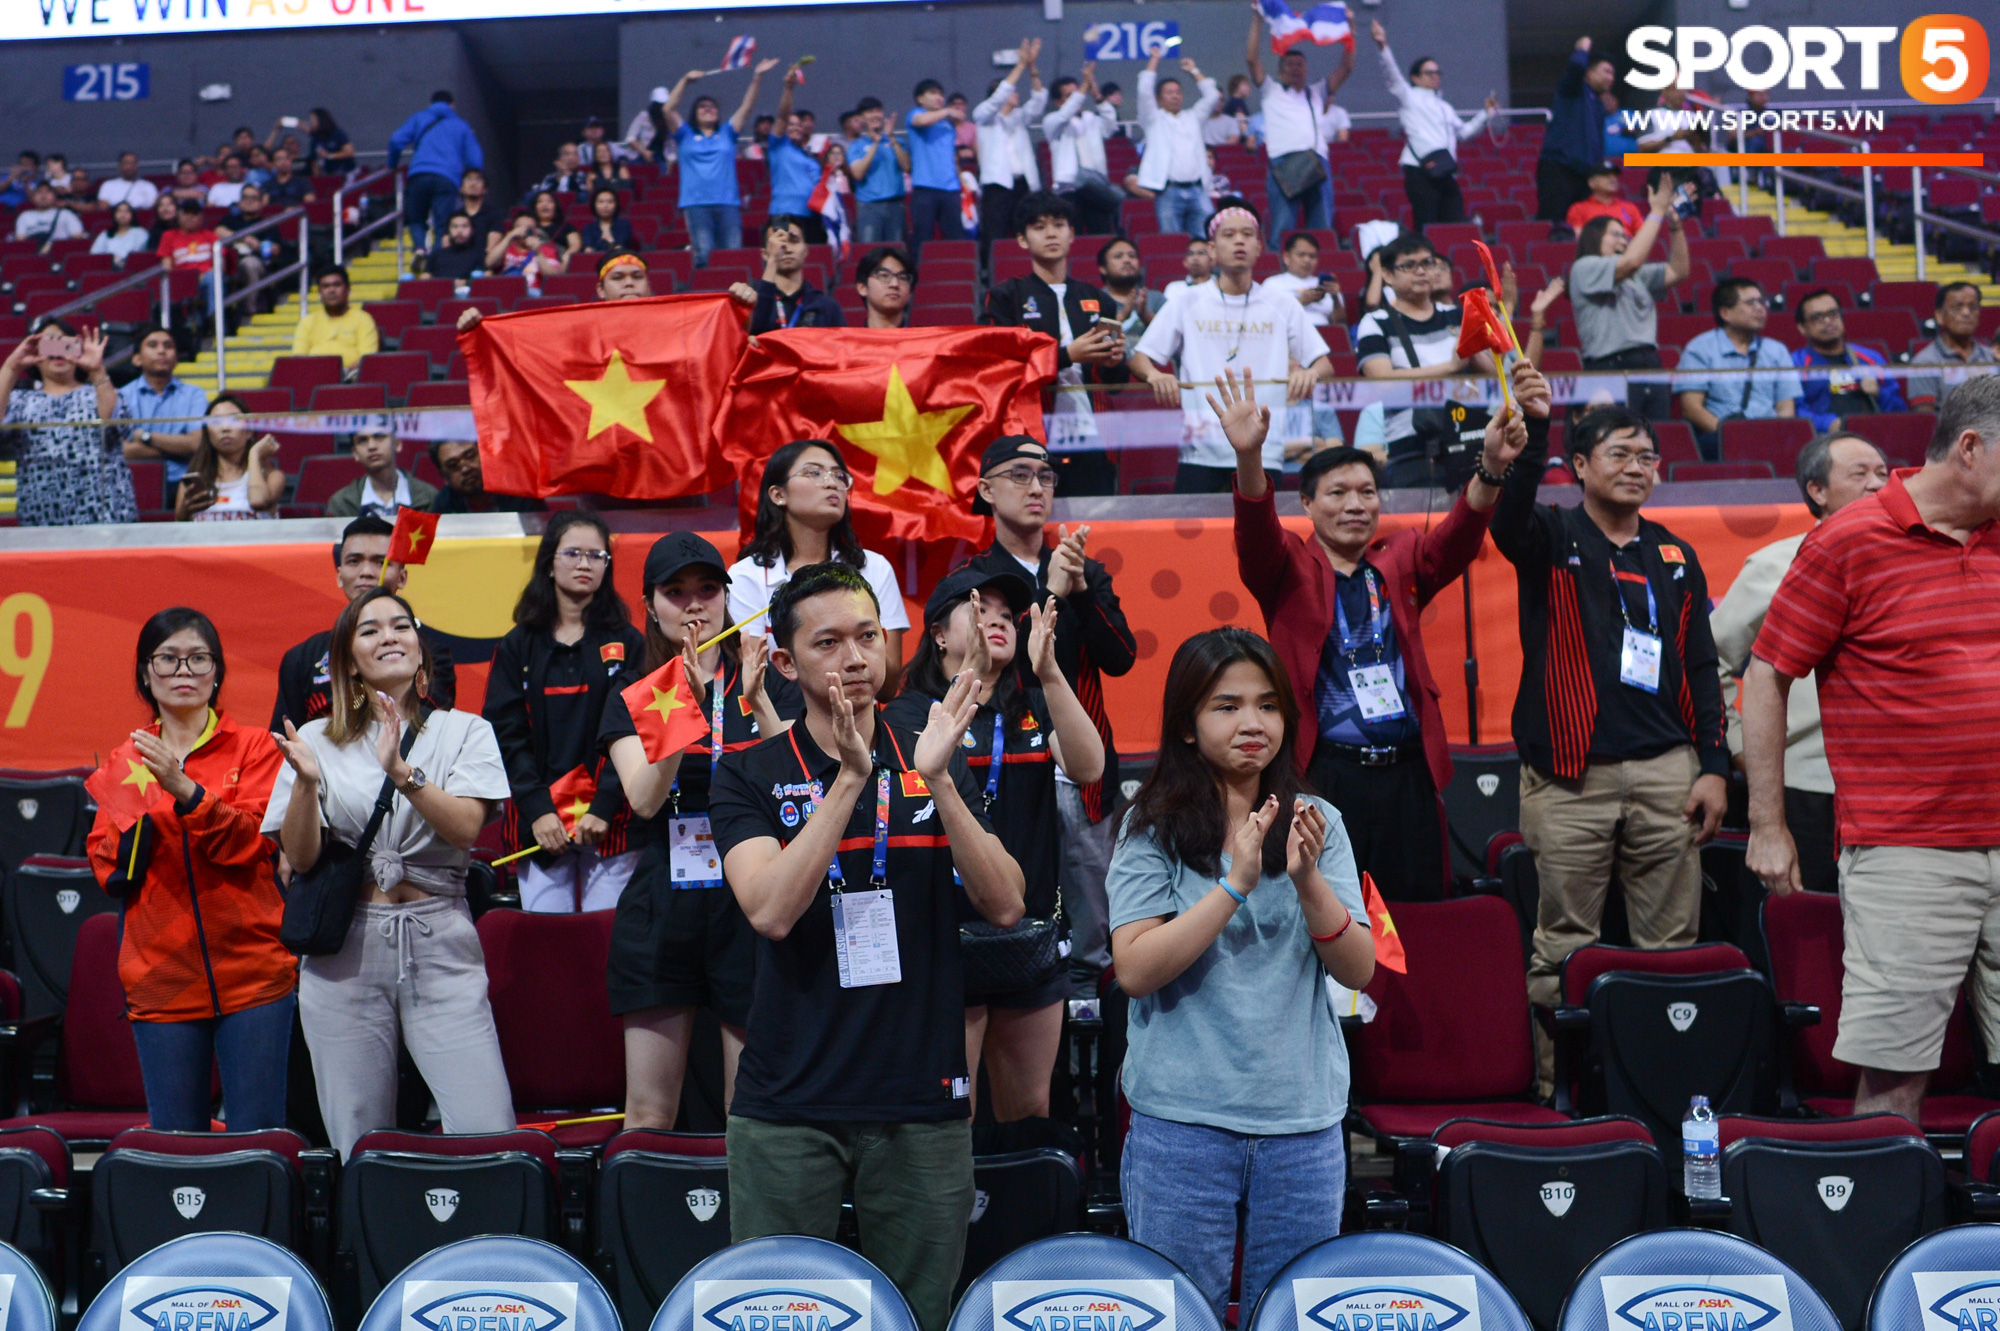 Tan giấc mộng vàng ở SEA Games 30, tuyển bóng rổ Việt Nam hướng tới tấm huy chương đồng thứ 2 - Ảnh 14.